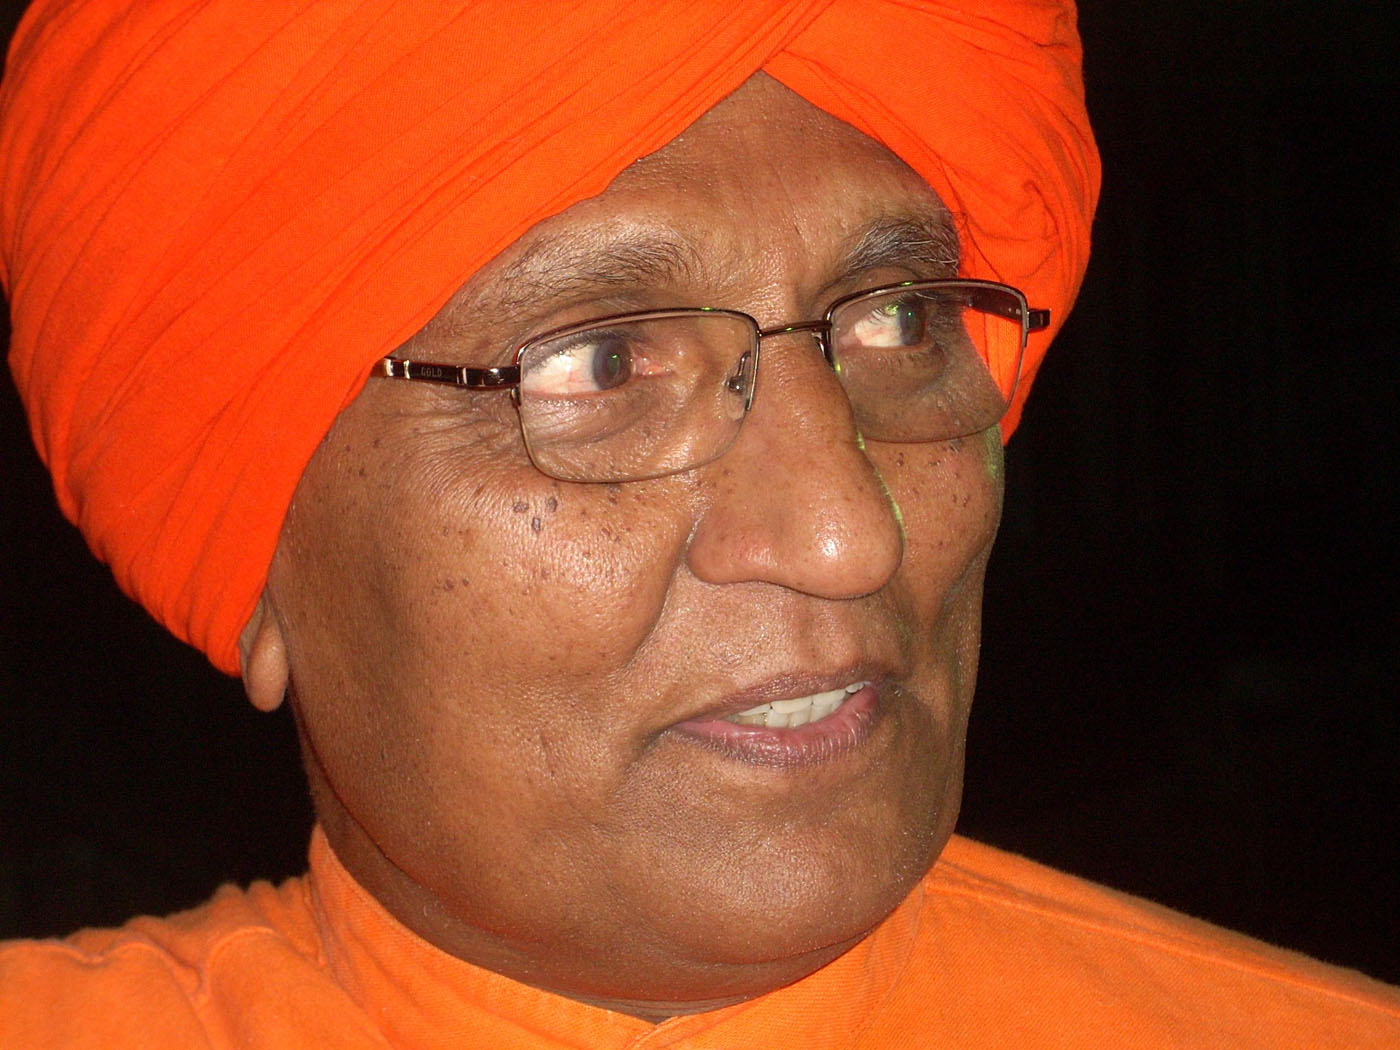 swami agnivesh